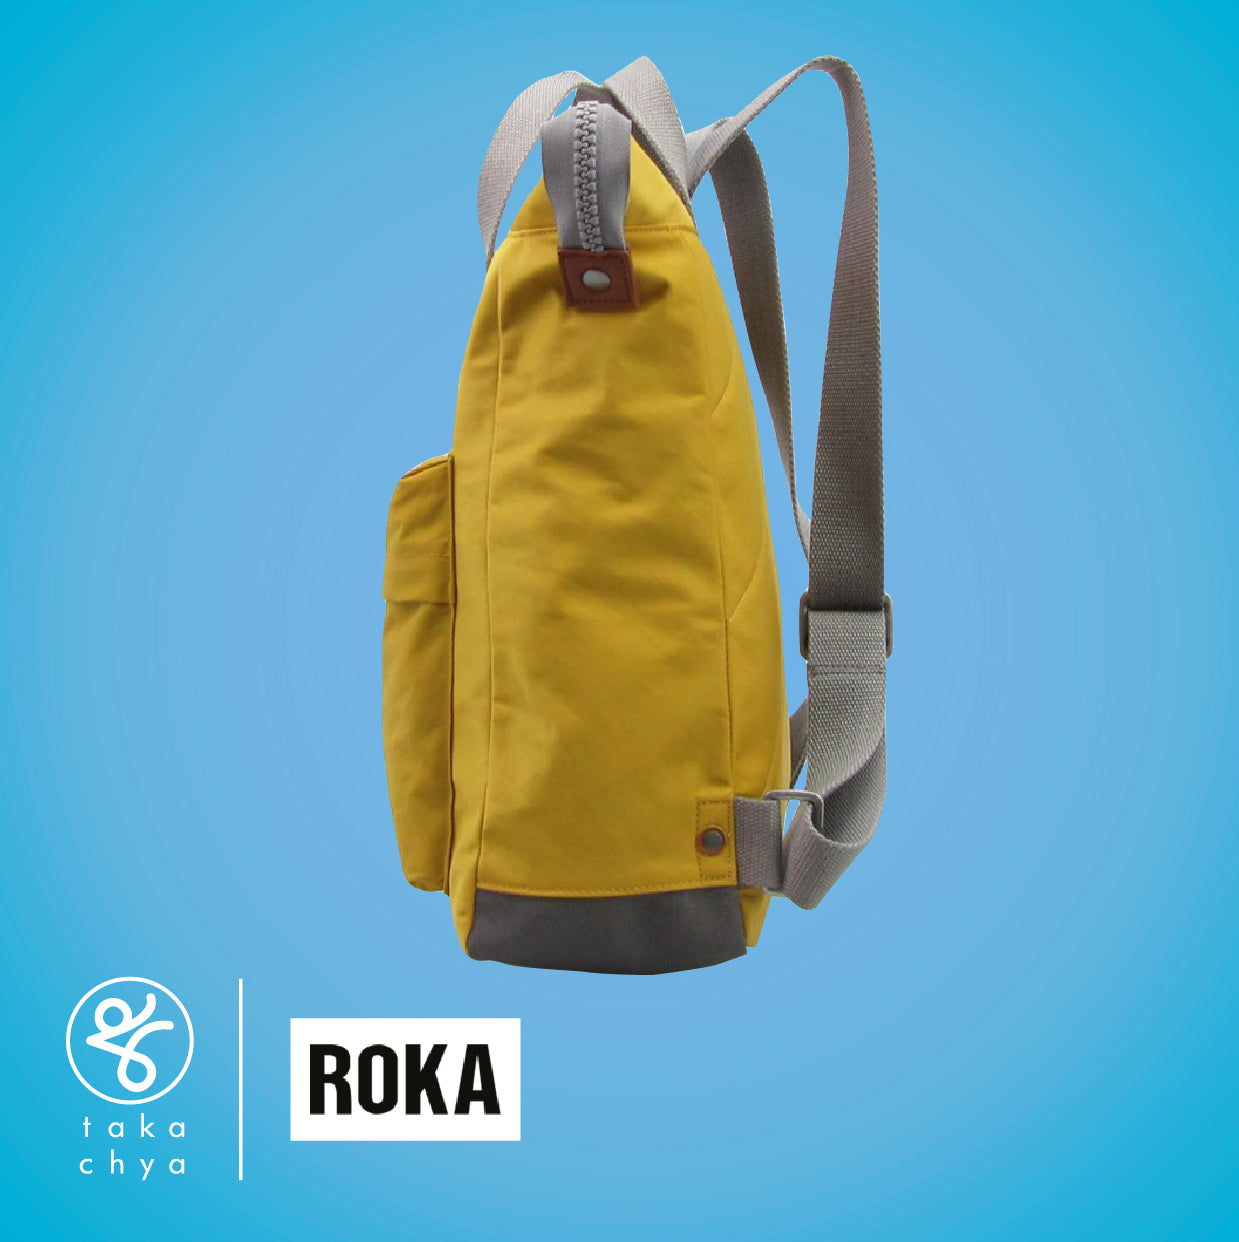 Roka Bantry B Small Corn Backpack